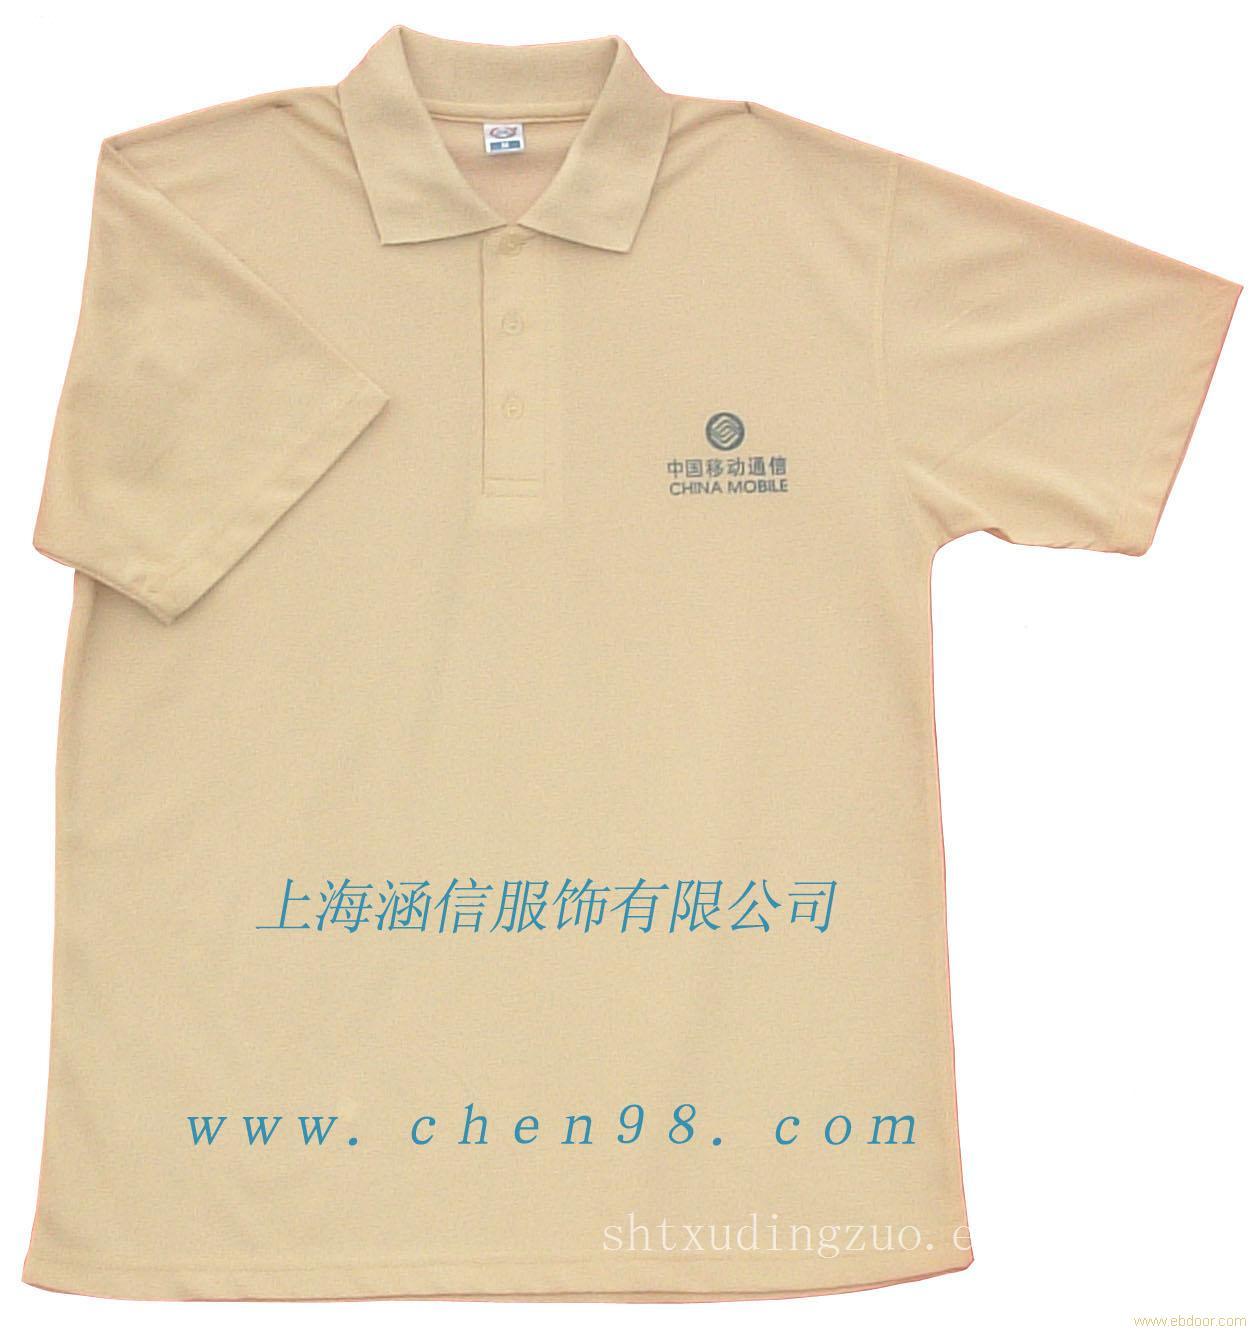 上海休闲t恤衫定做-t恤衫定做价格